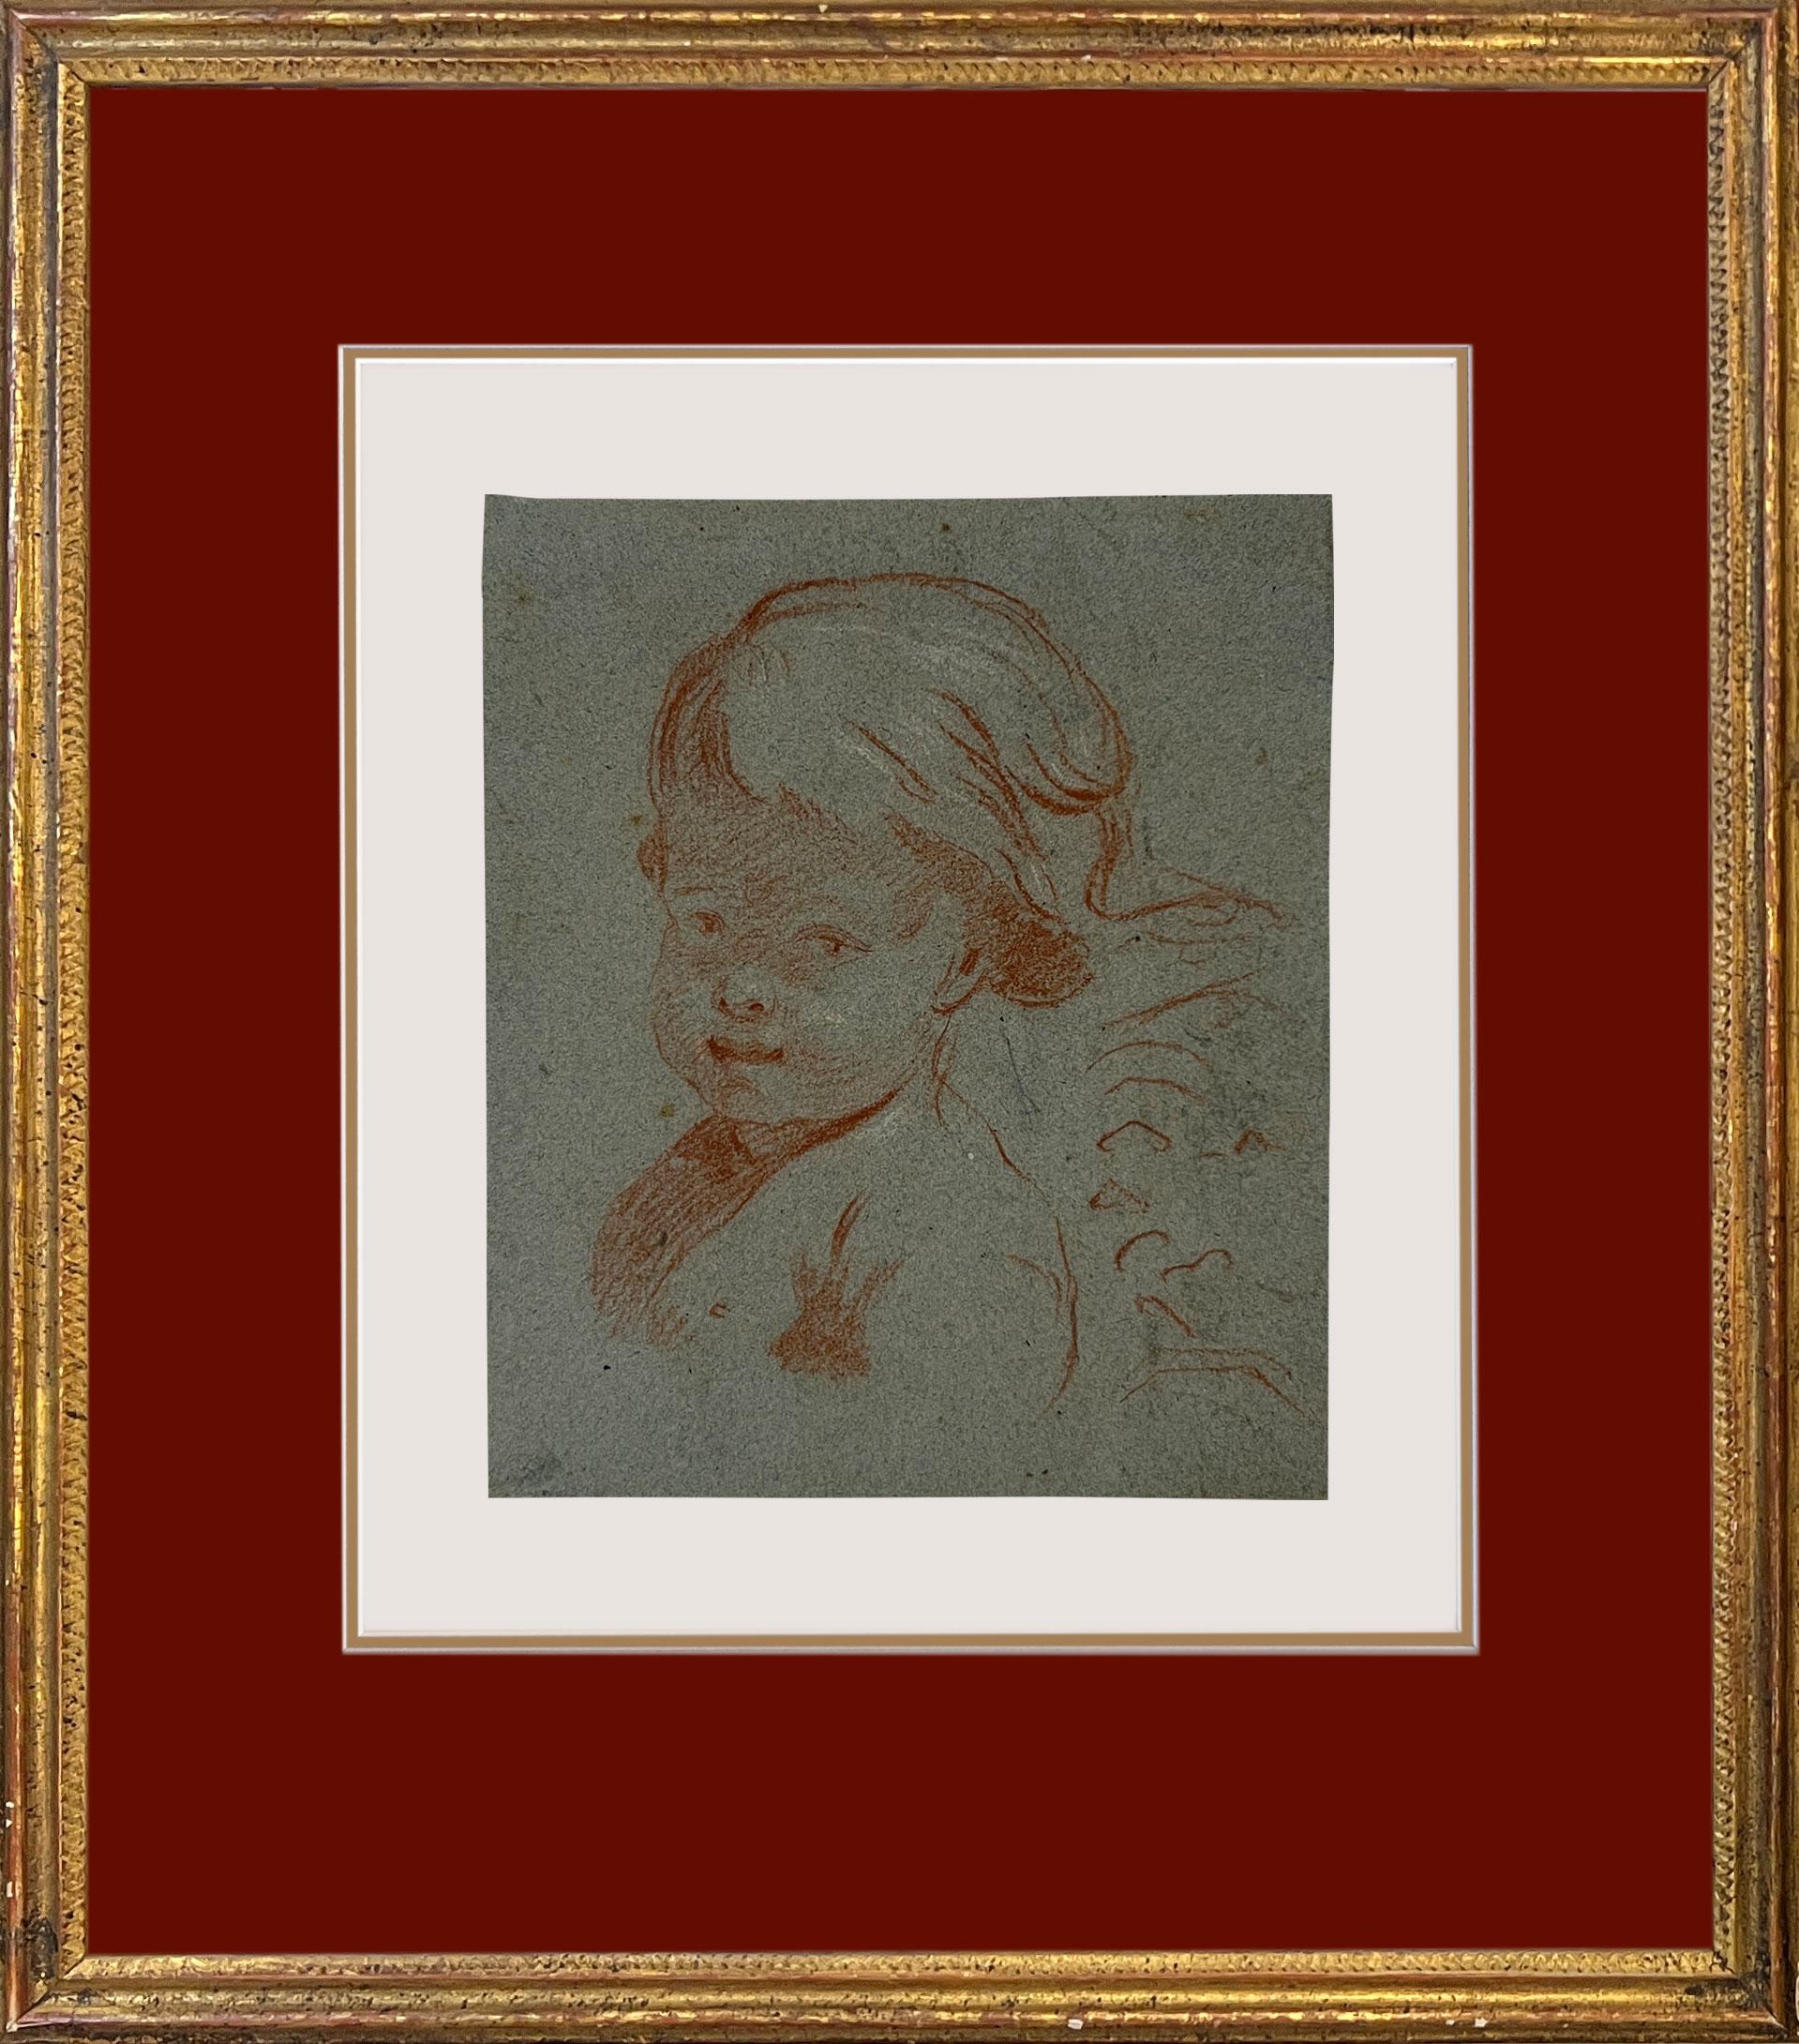 Cercle de François Boucher (français 1703 - 1770), Étude d'enfant.
Cette charmante œuvre est probablement une étude pour un tableau. Elle représente un enfant avec une bande de tissu gonflant sur la tête et le dos. Il s'agit d'une composition que